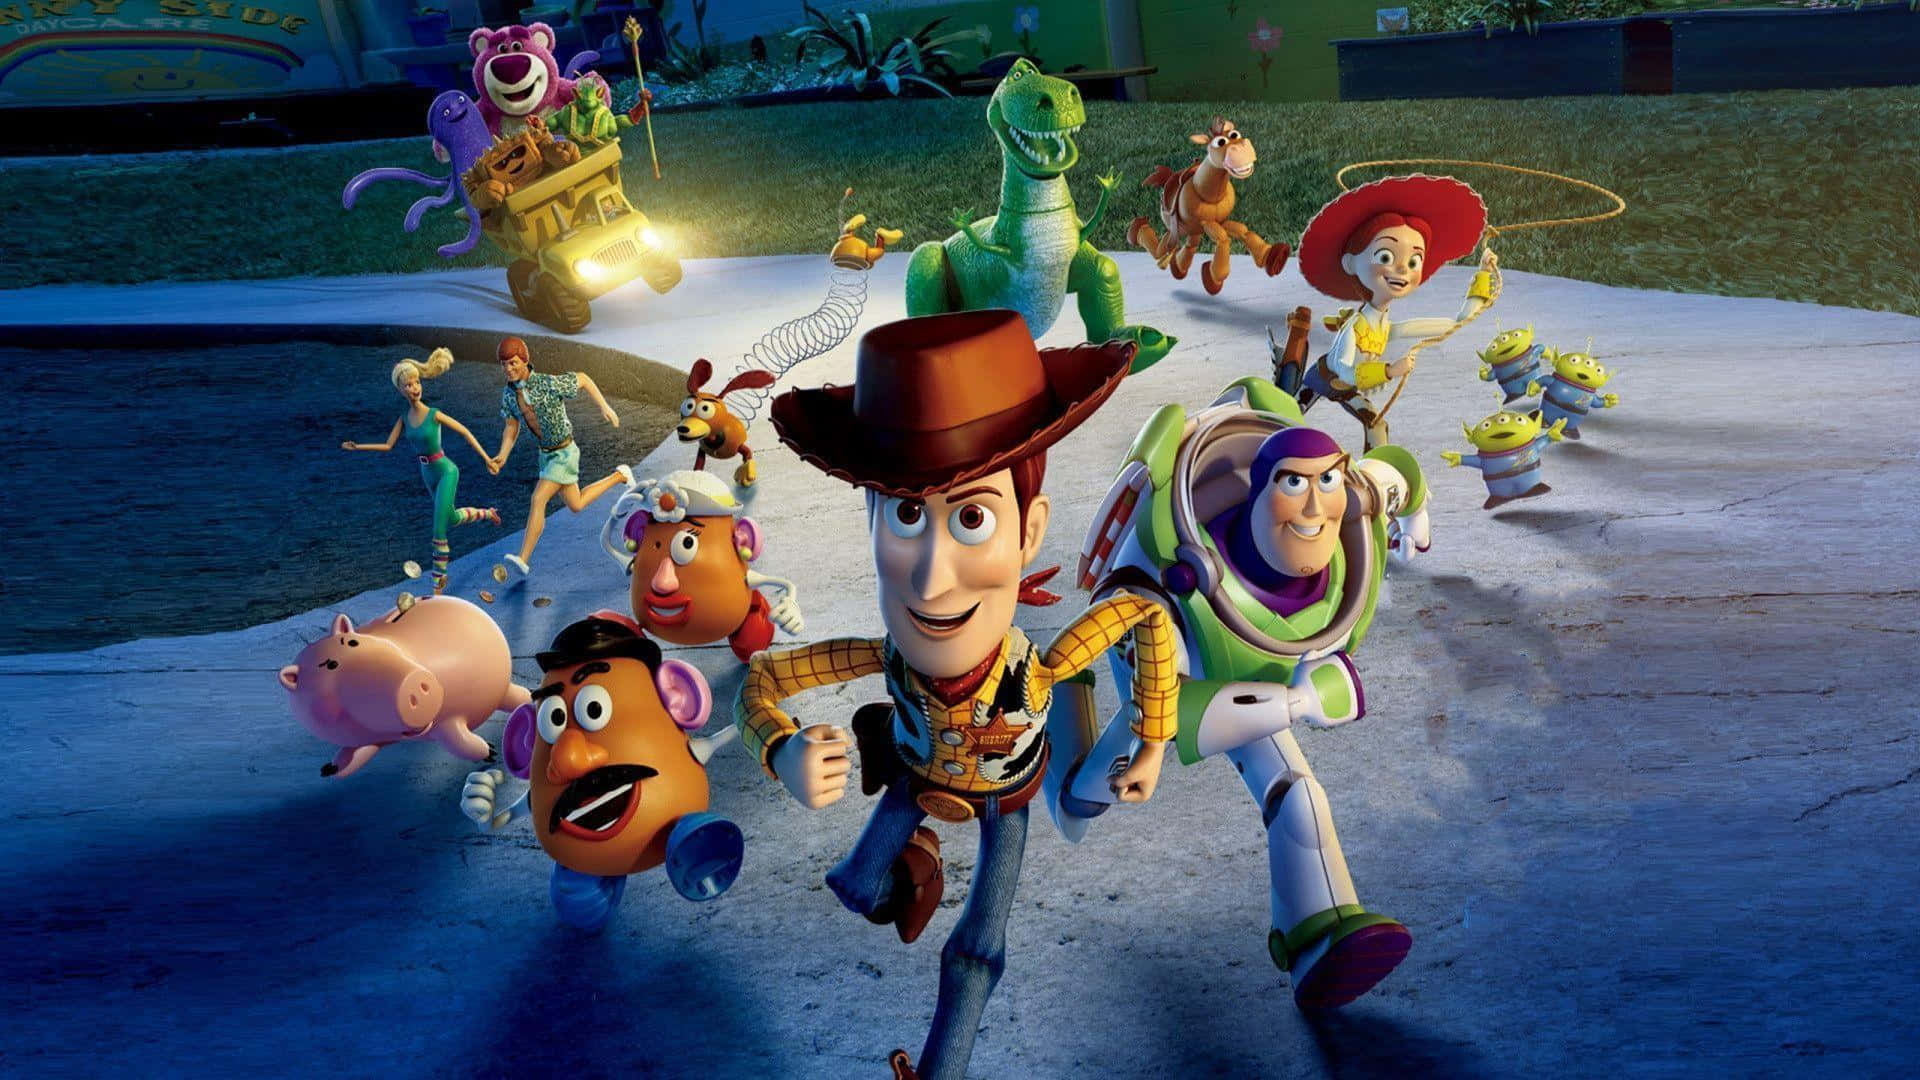 Miglioripersonaggi Di Sfondo Di Toy Story 3 Di Disney.